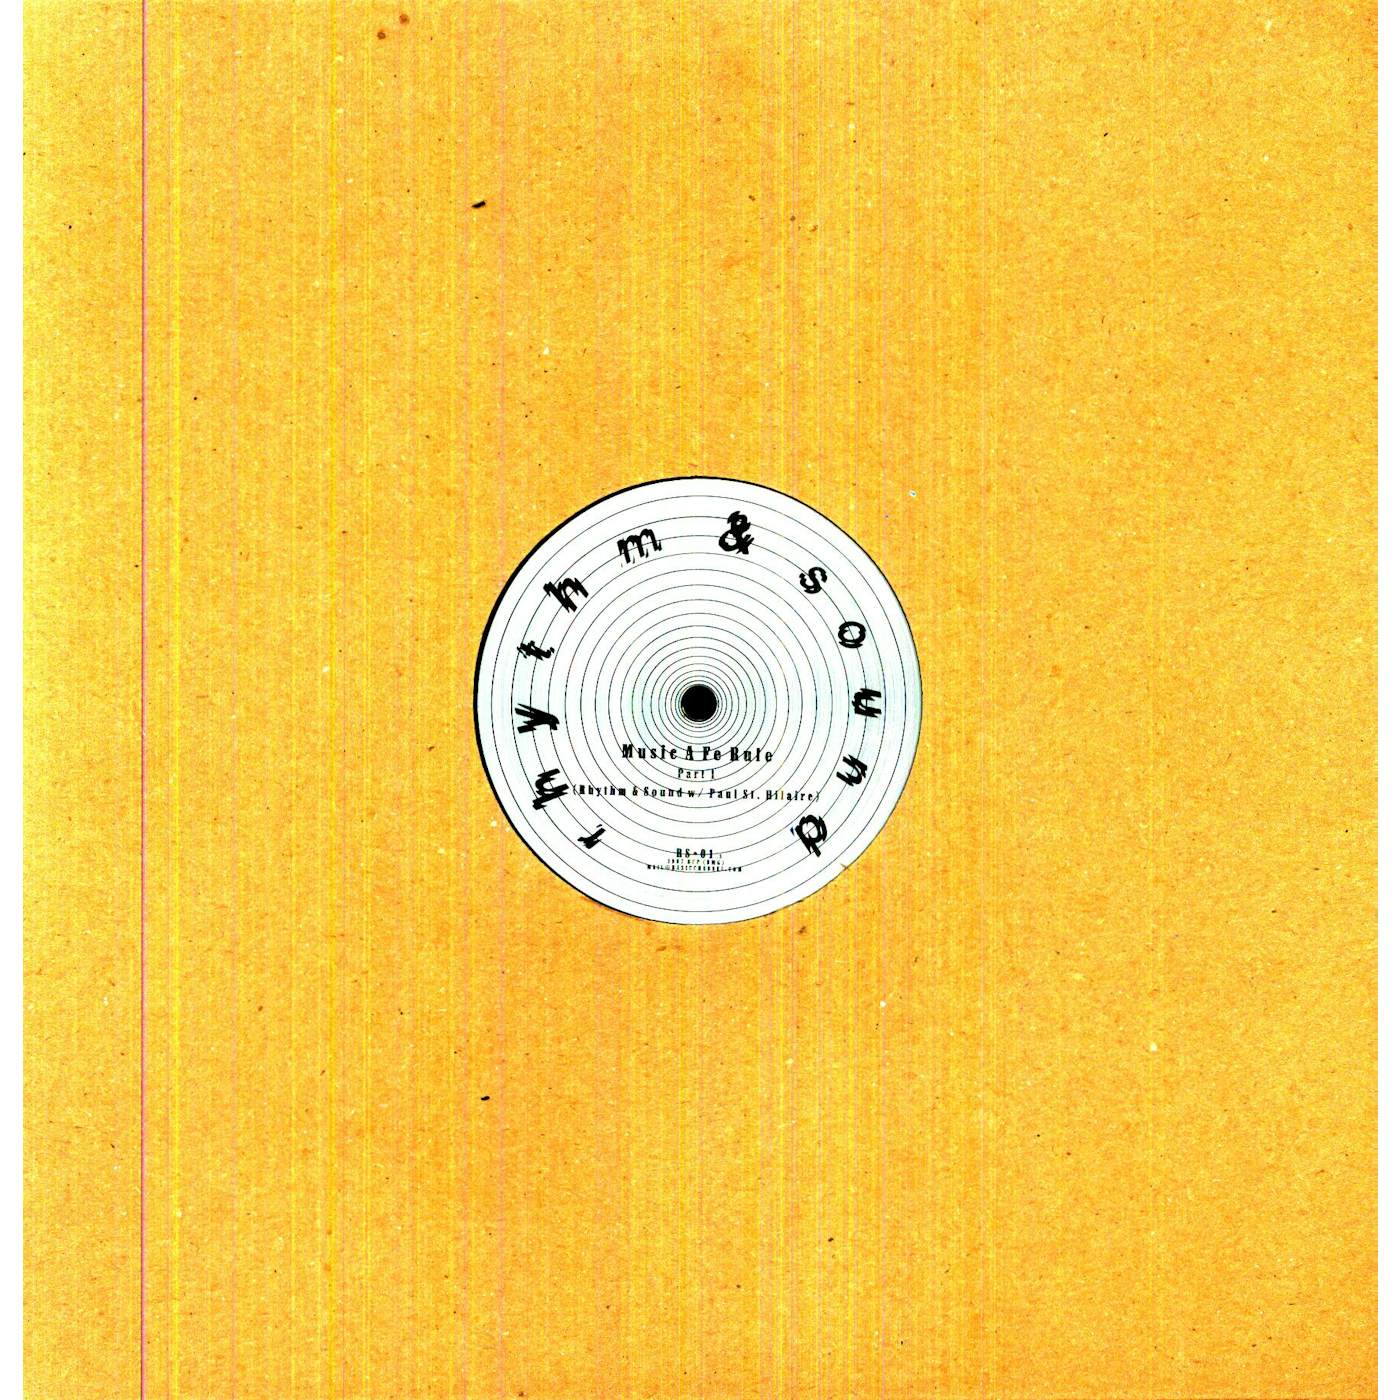 Rhythm & Sound & Paul St Hilaire MUSIC A FE RULE Vinyl Record